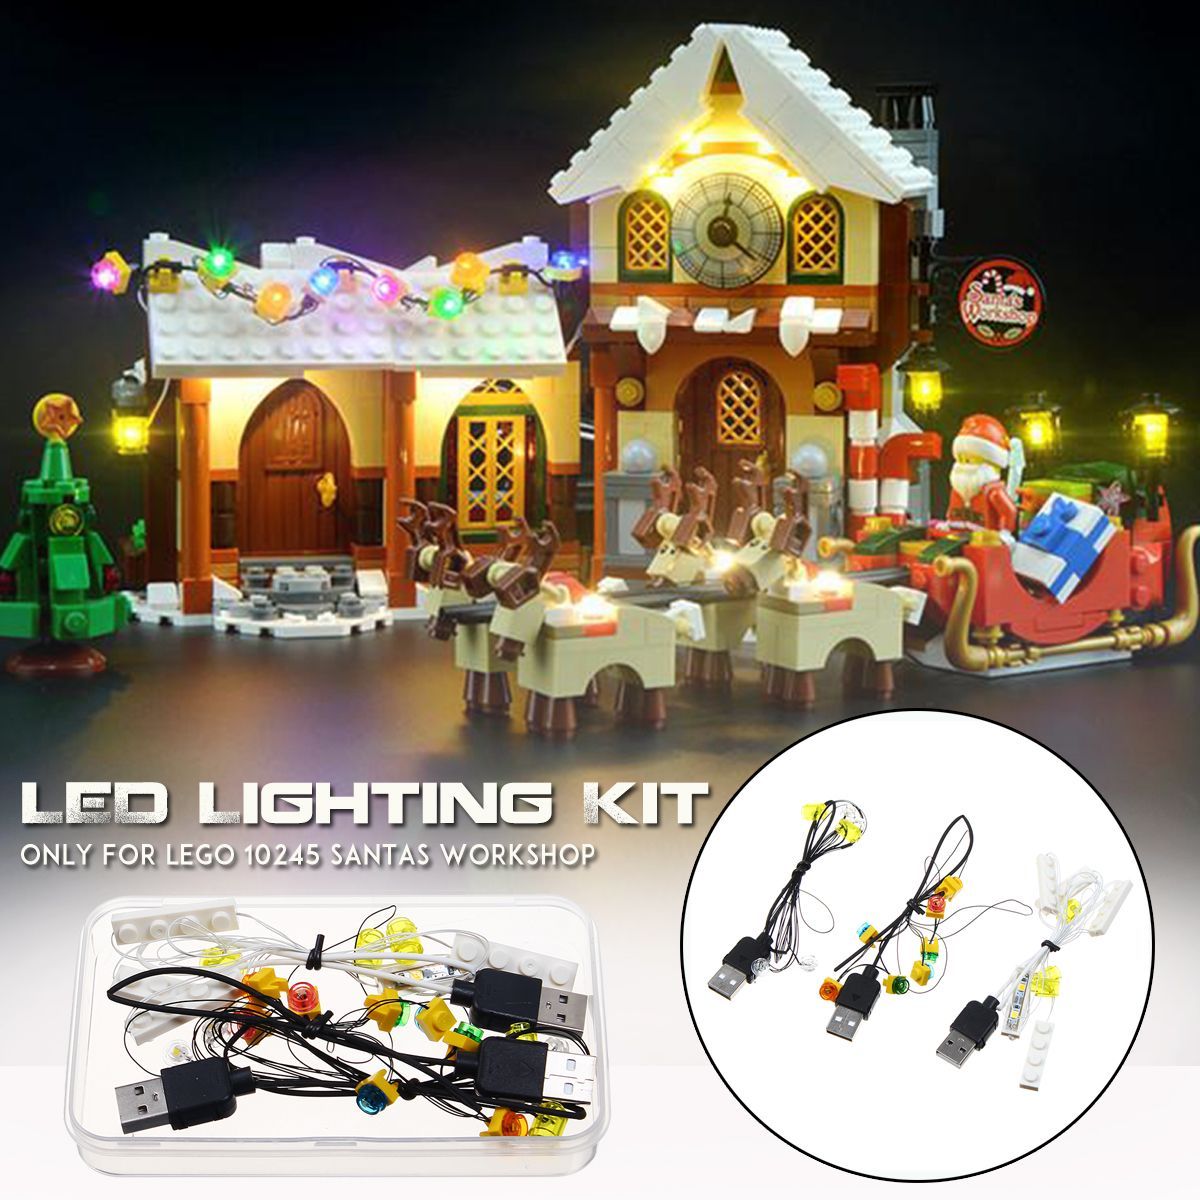 Led-Light-Kit-Only-For-Lego-10245-Santas-Workshop-Castle-Bricks-DIY-Tool-Gift-Decorations-1600496